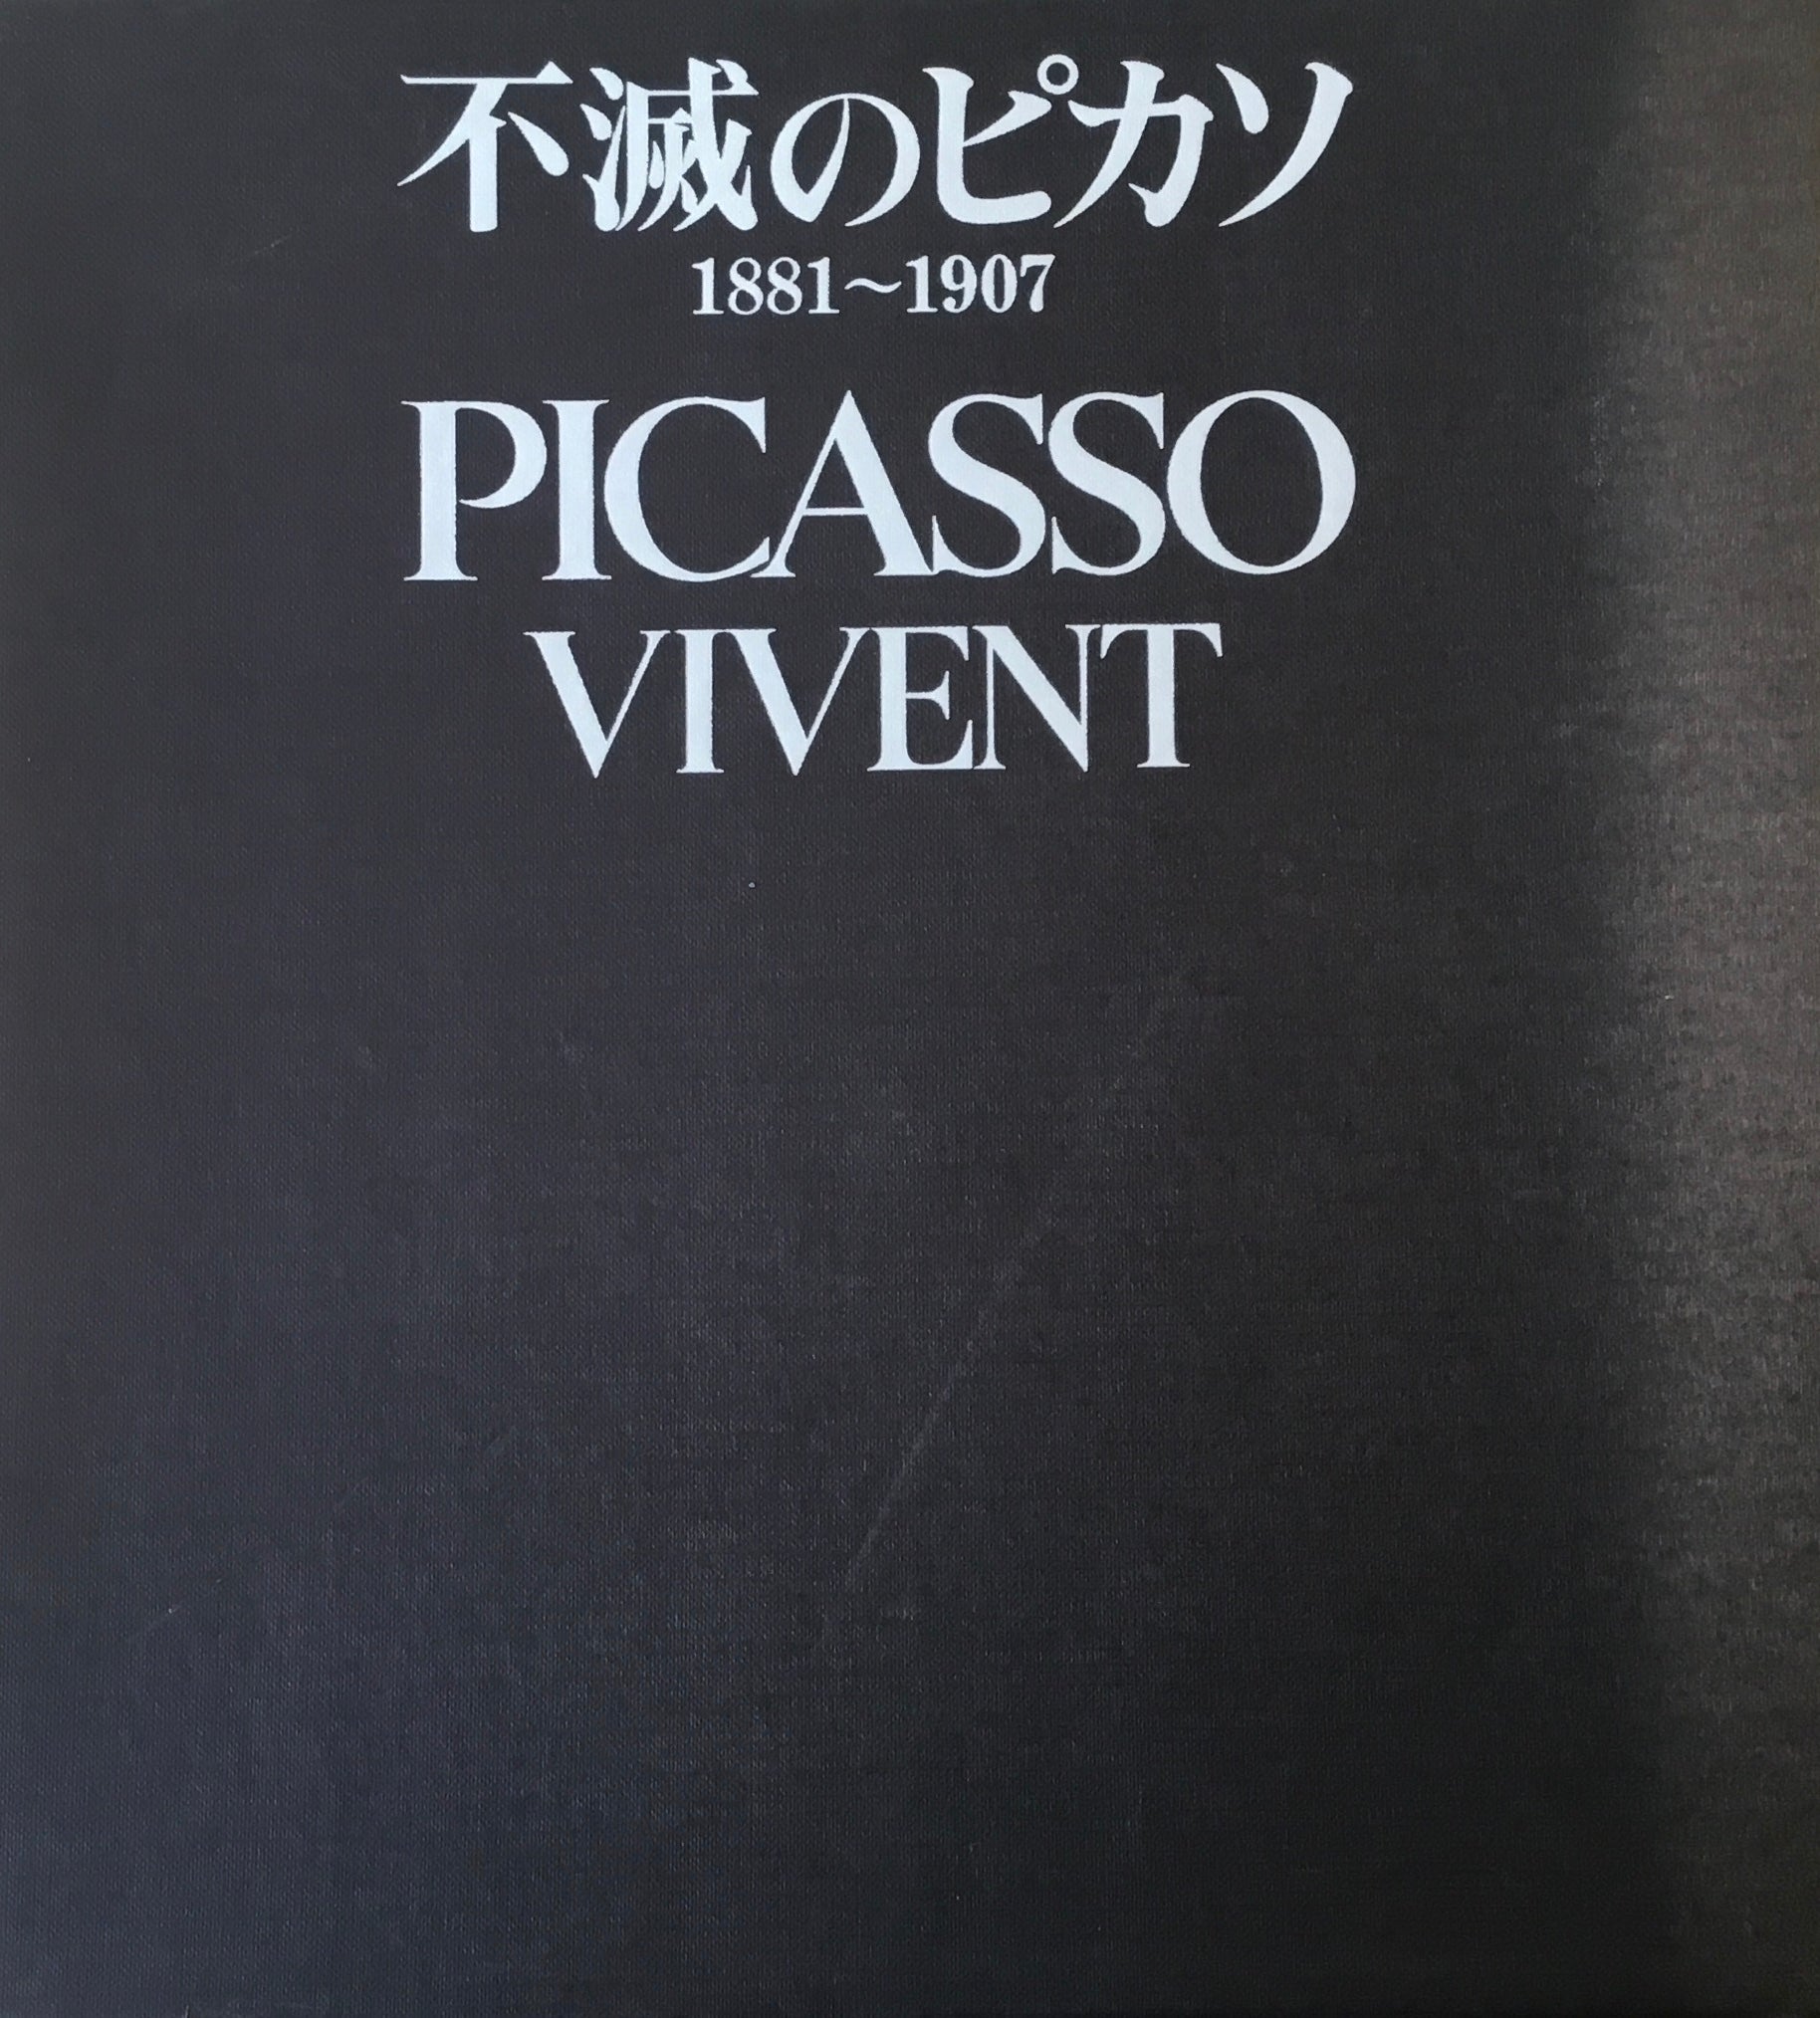 45492/パブロ・ピカソ 著作集 Pablo Picasso Collected Writings 1989 